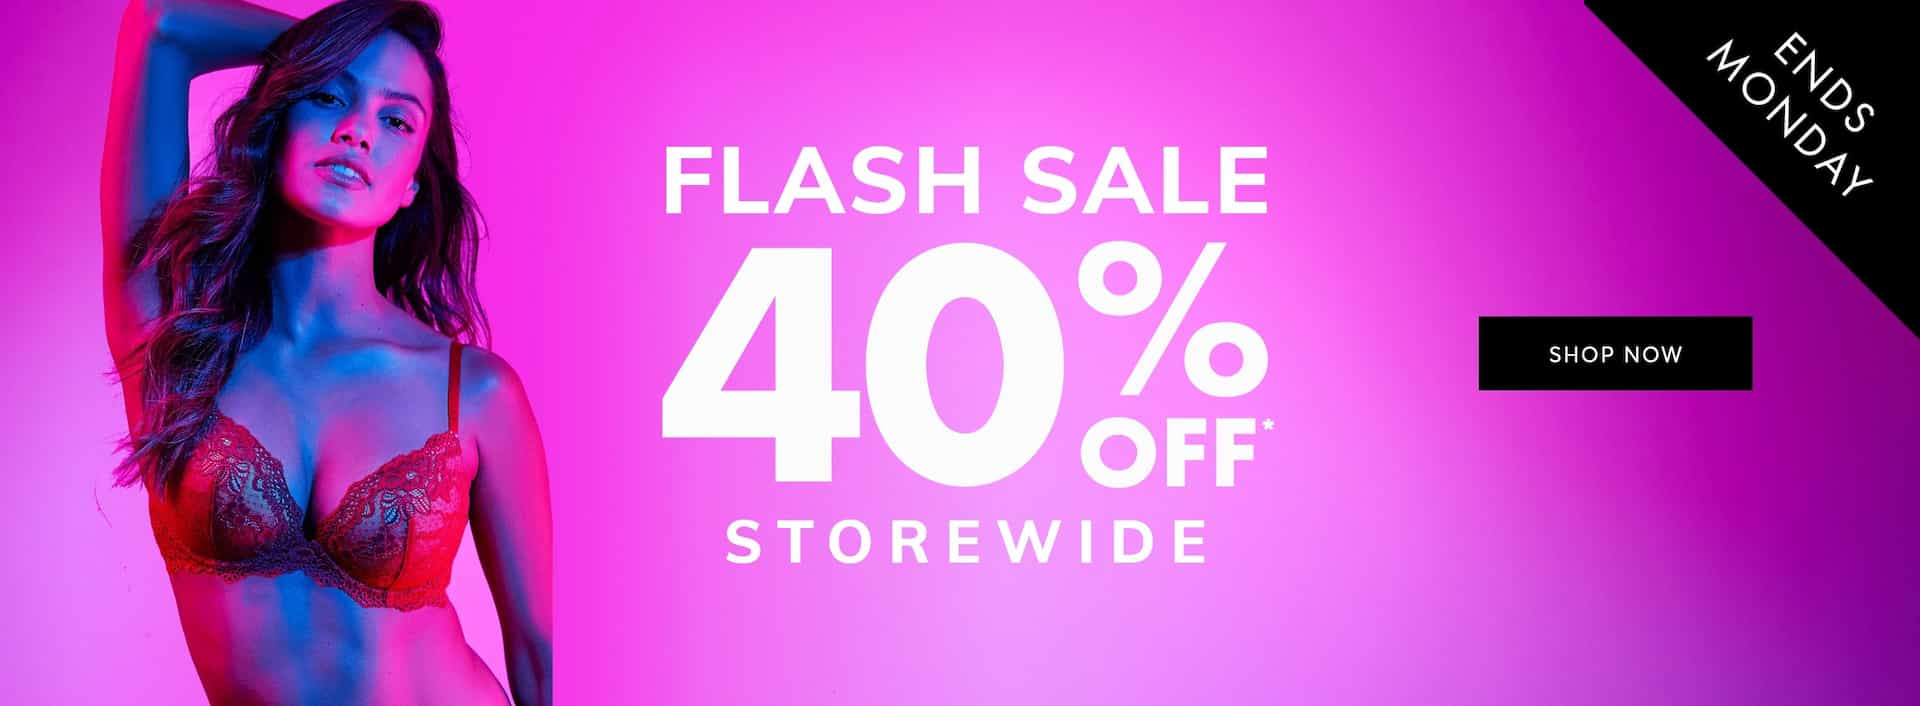 Flash sale 40% OFF storewide